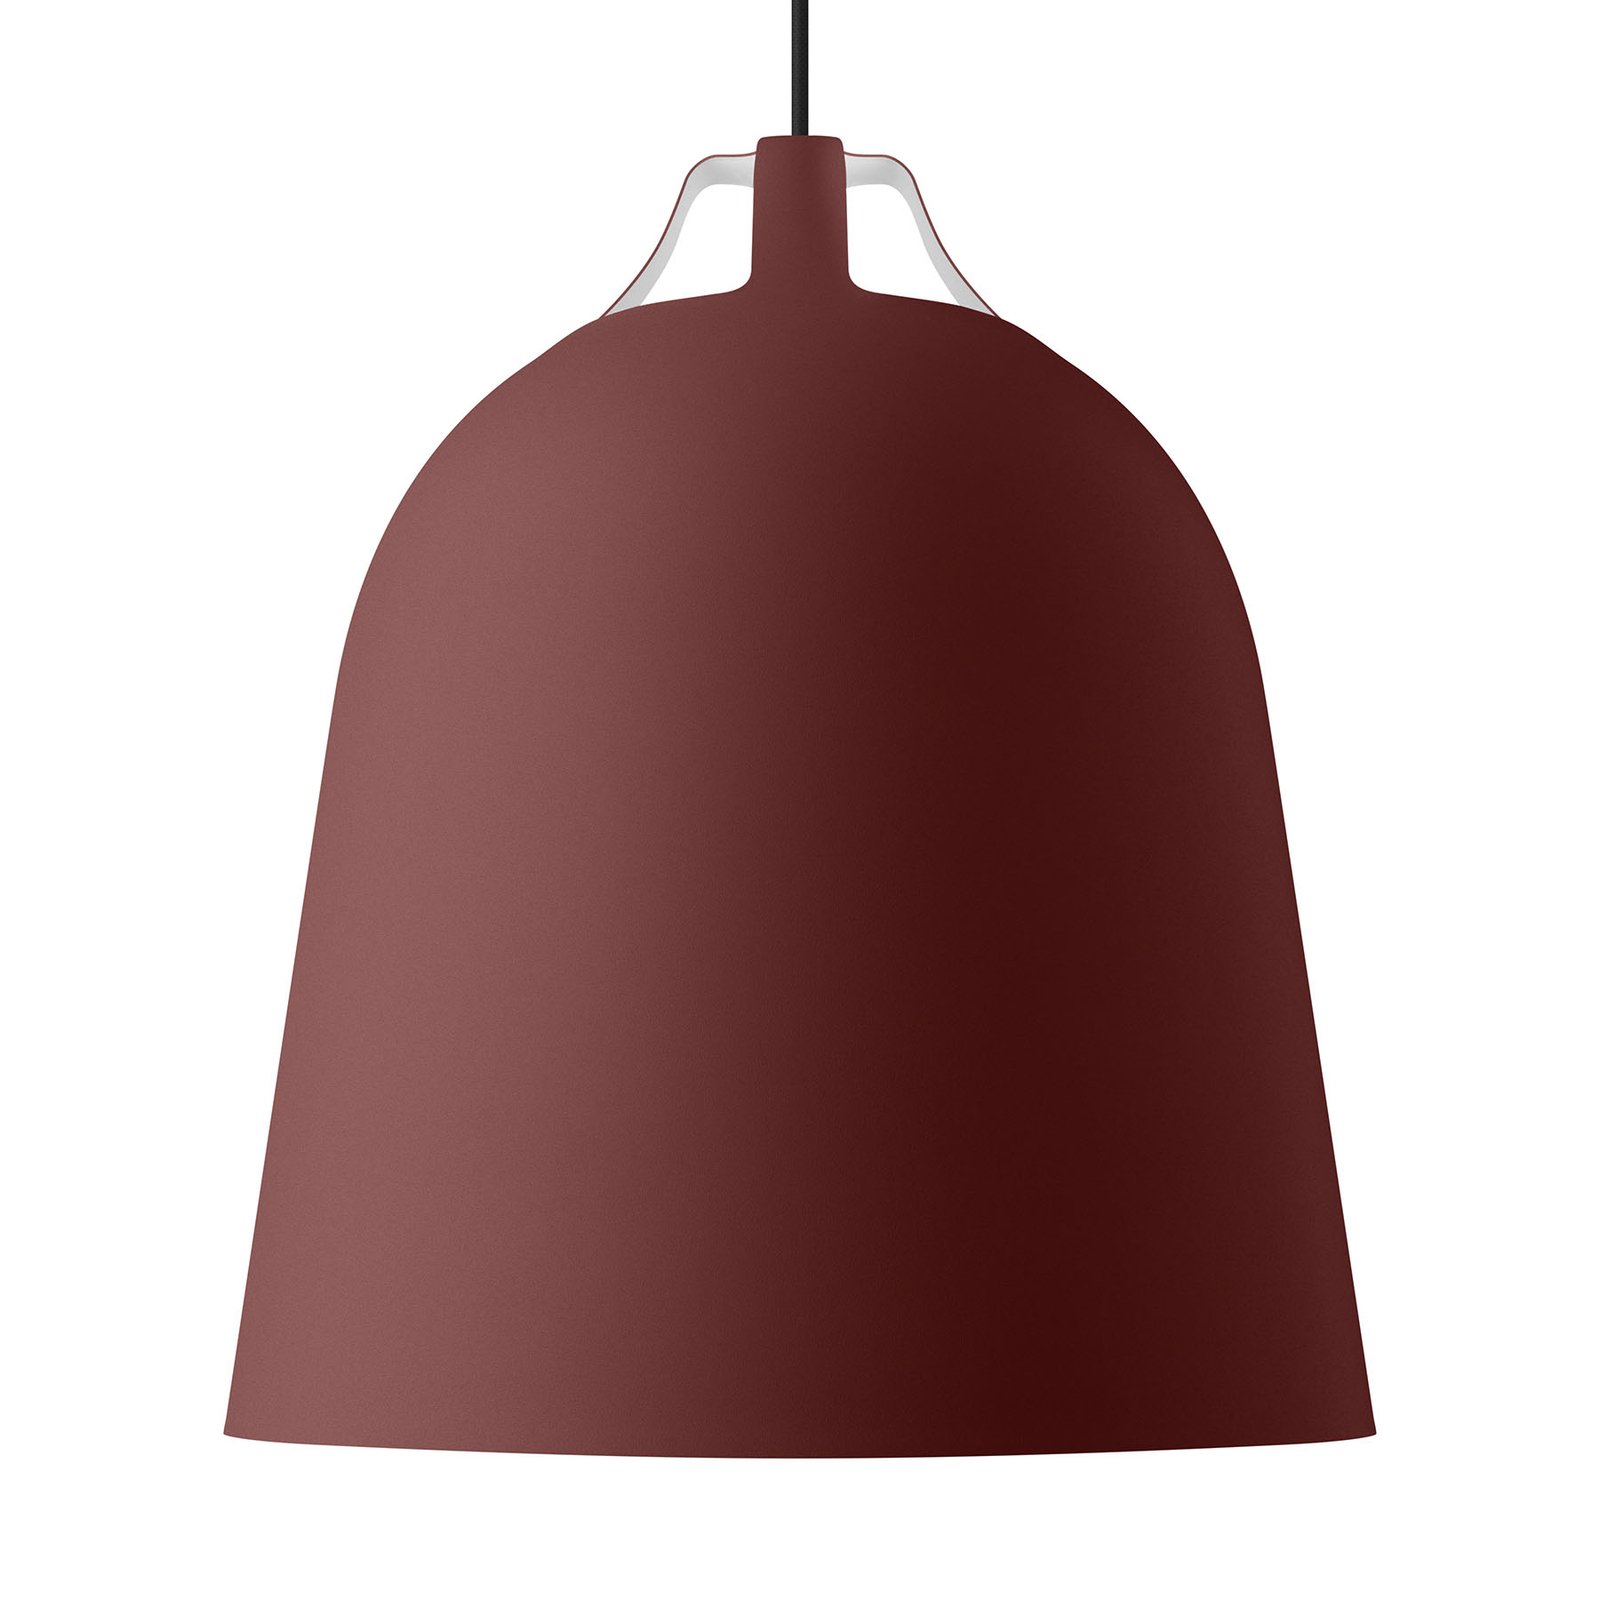 EVA Solo Clover hængelampe, Ø 35cm, burgunderrød